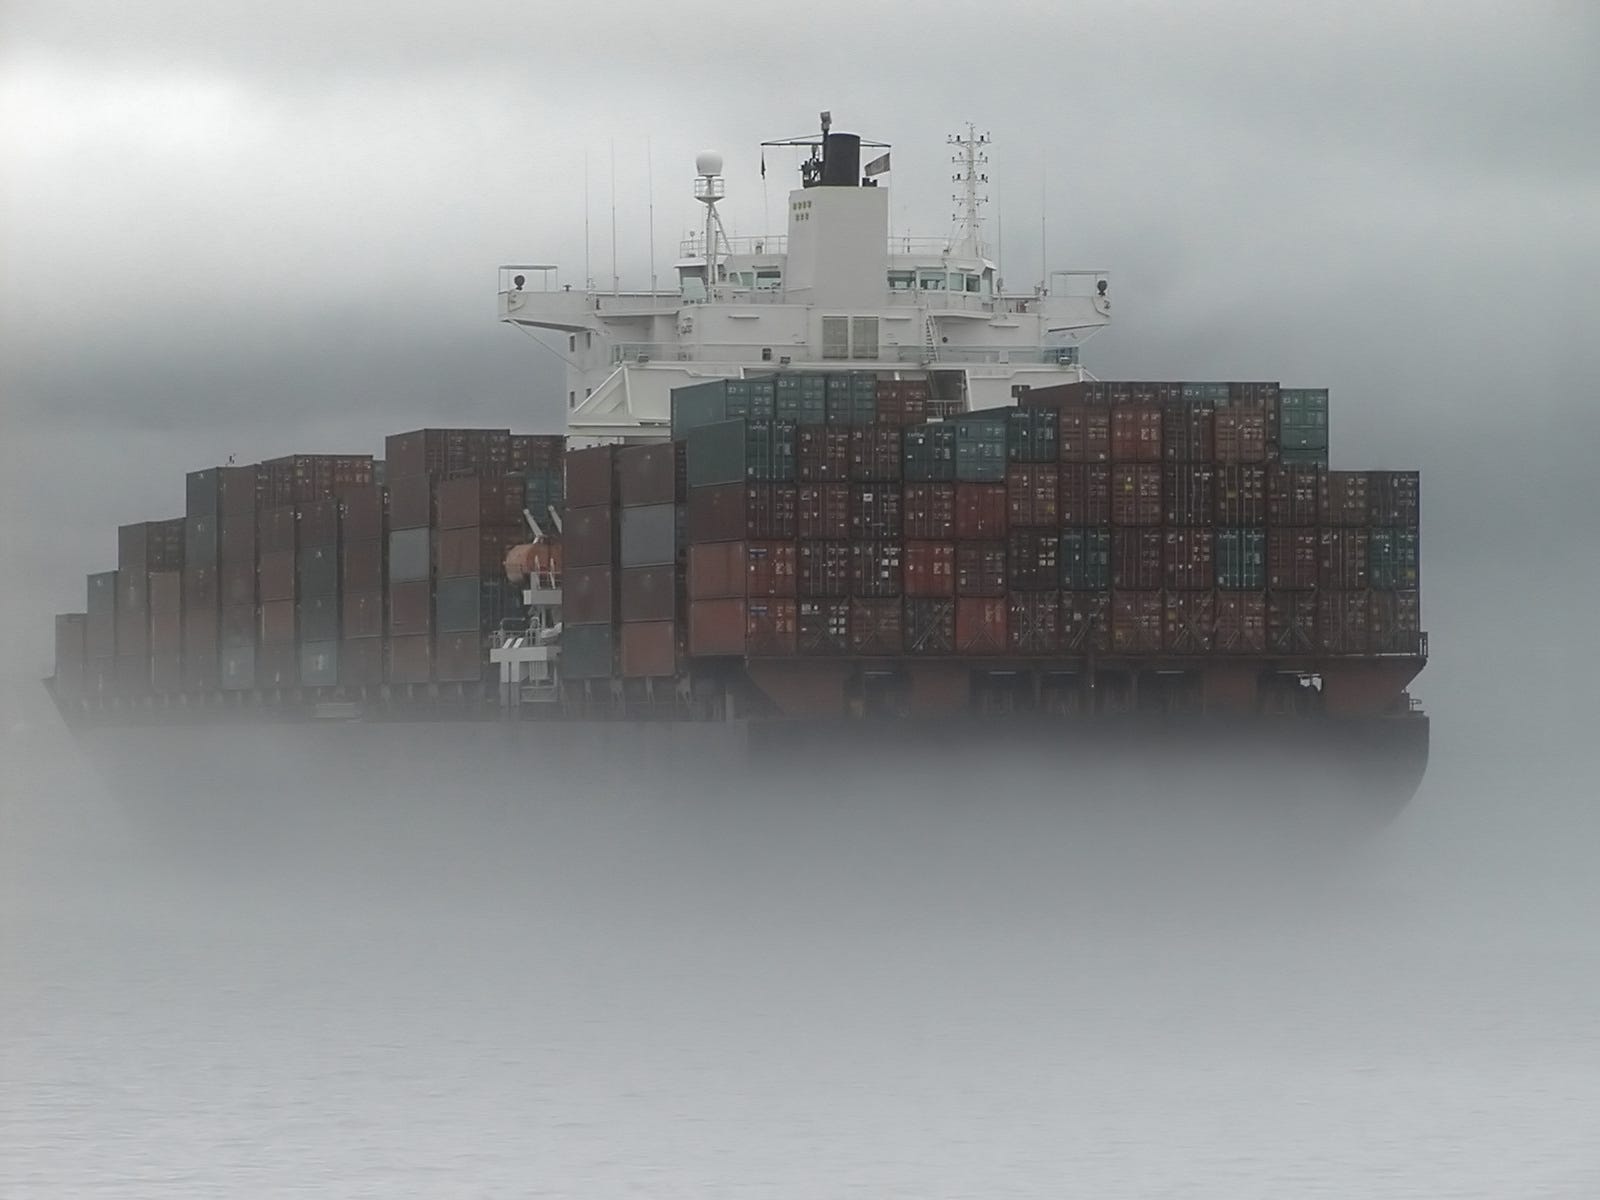 Frachtschiff durch Nebel gesehen